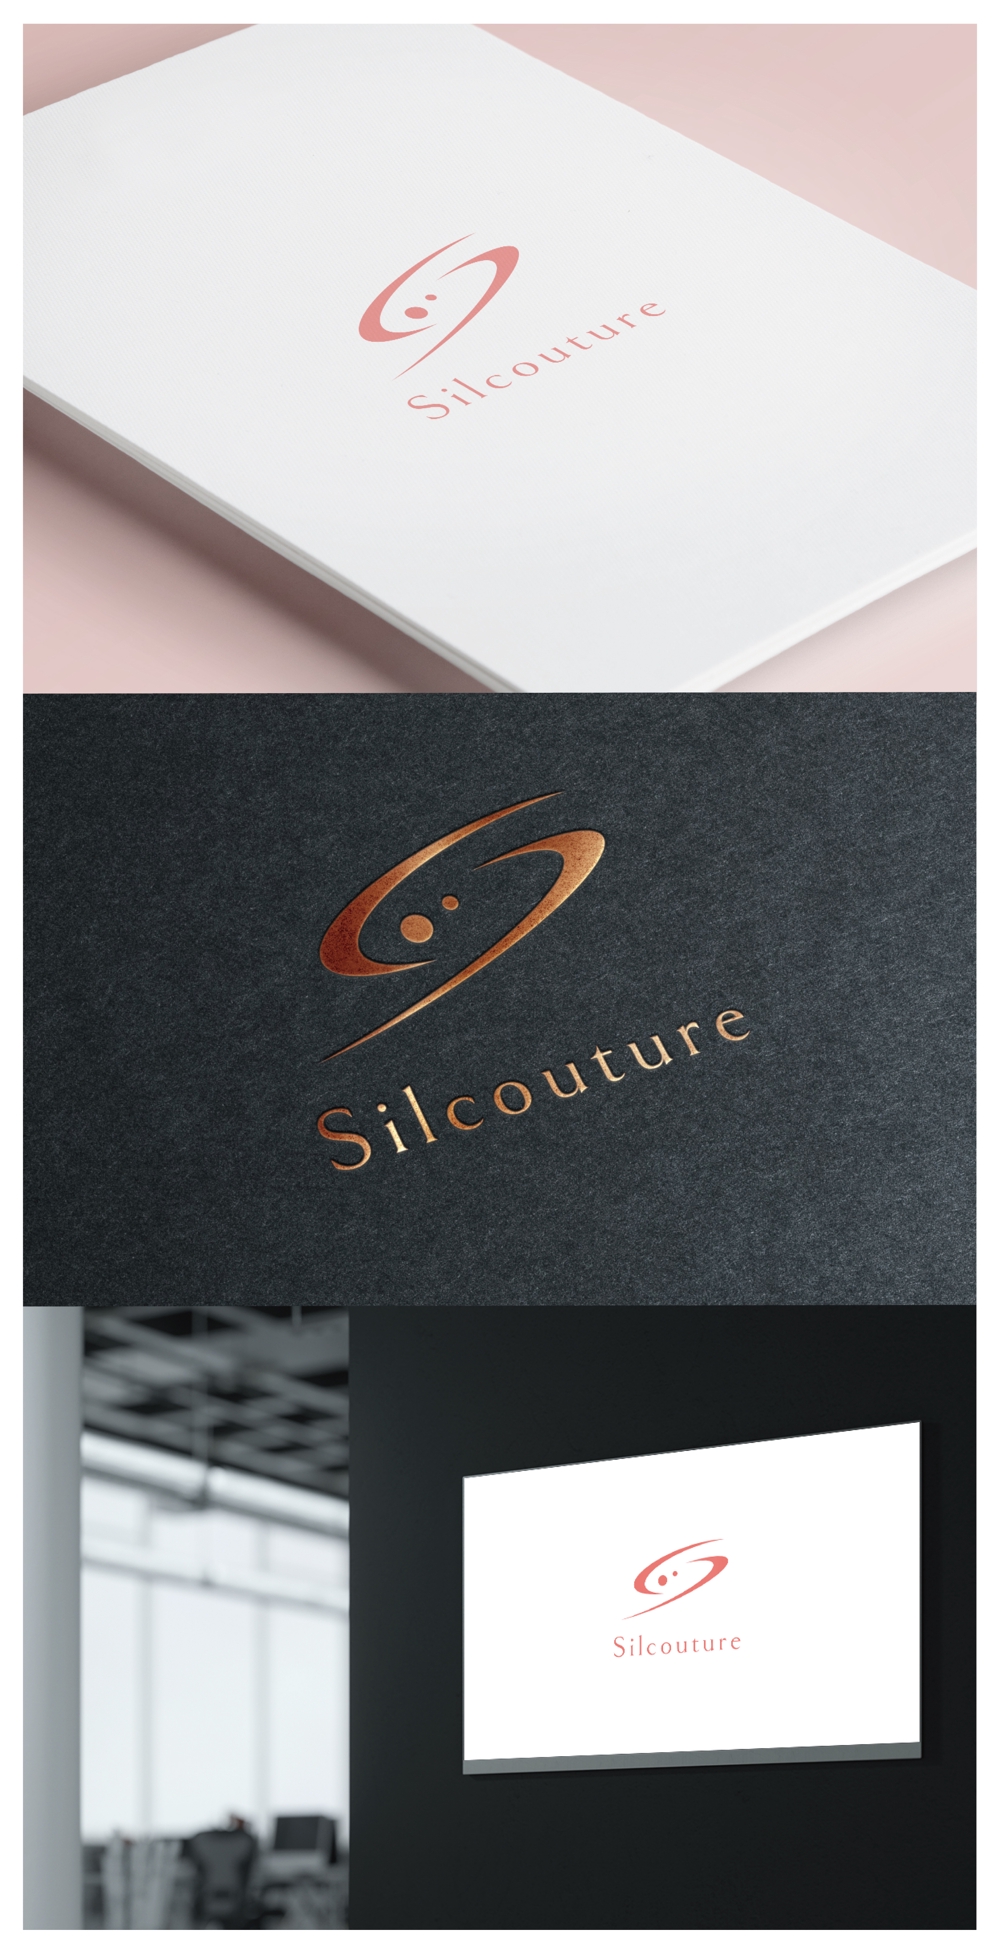 Silcouture_logo01_01.jpg